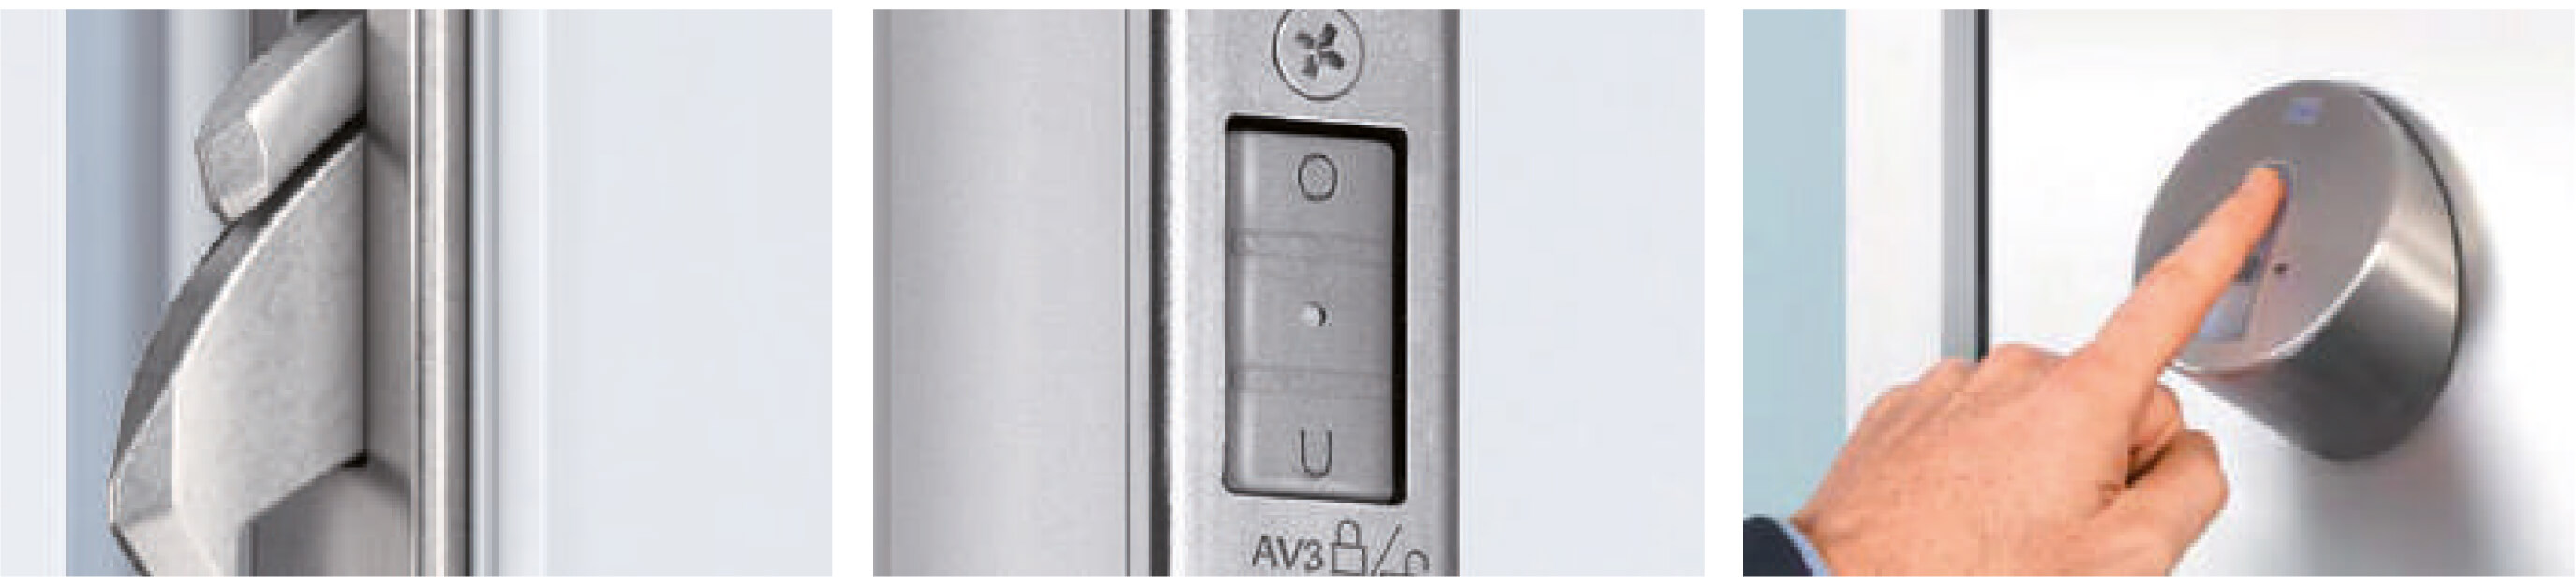 Puertas de aluminio Ocultec | Aluminios Valverde – Ventanas de aluminio y PVC a la carta para profesionales